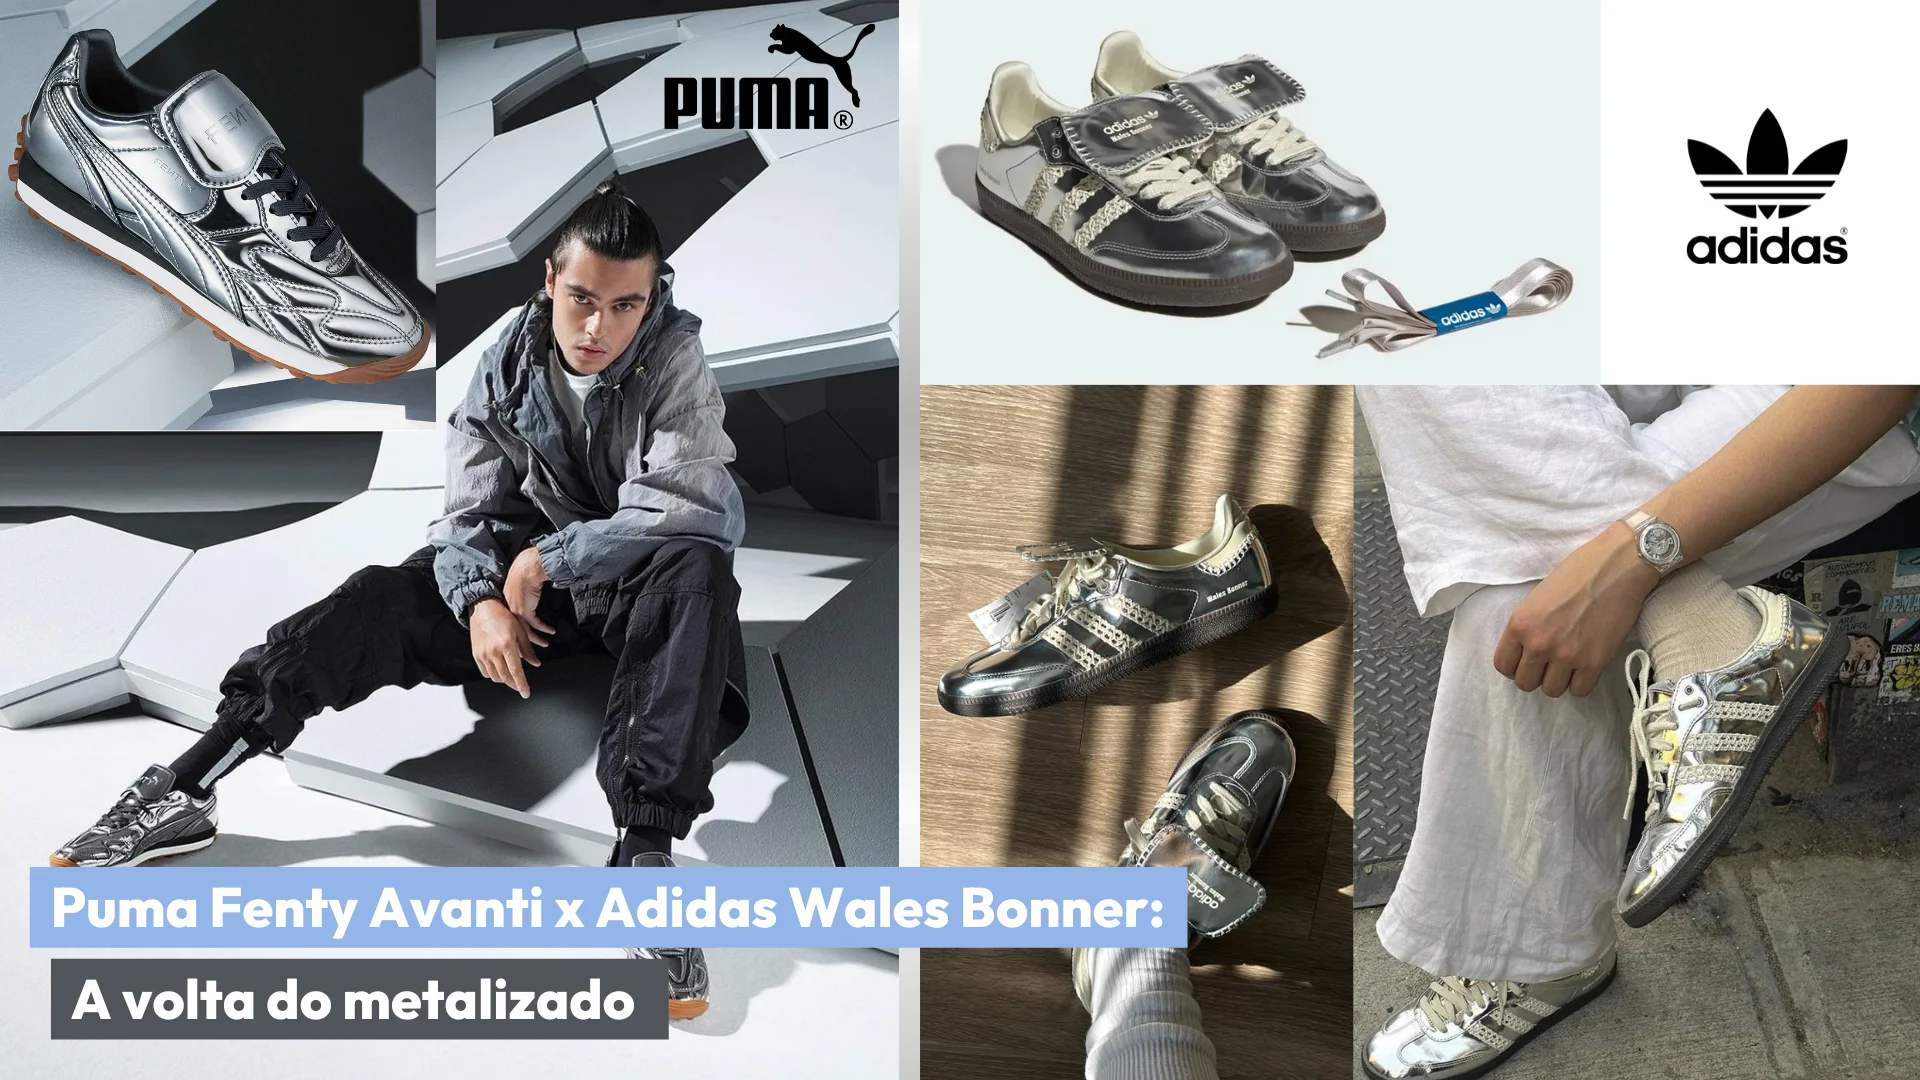 Colagem com modelo de tênis Puma e Adidas para ilustrar o assunto do post.